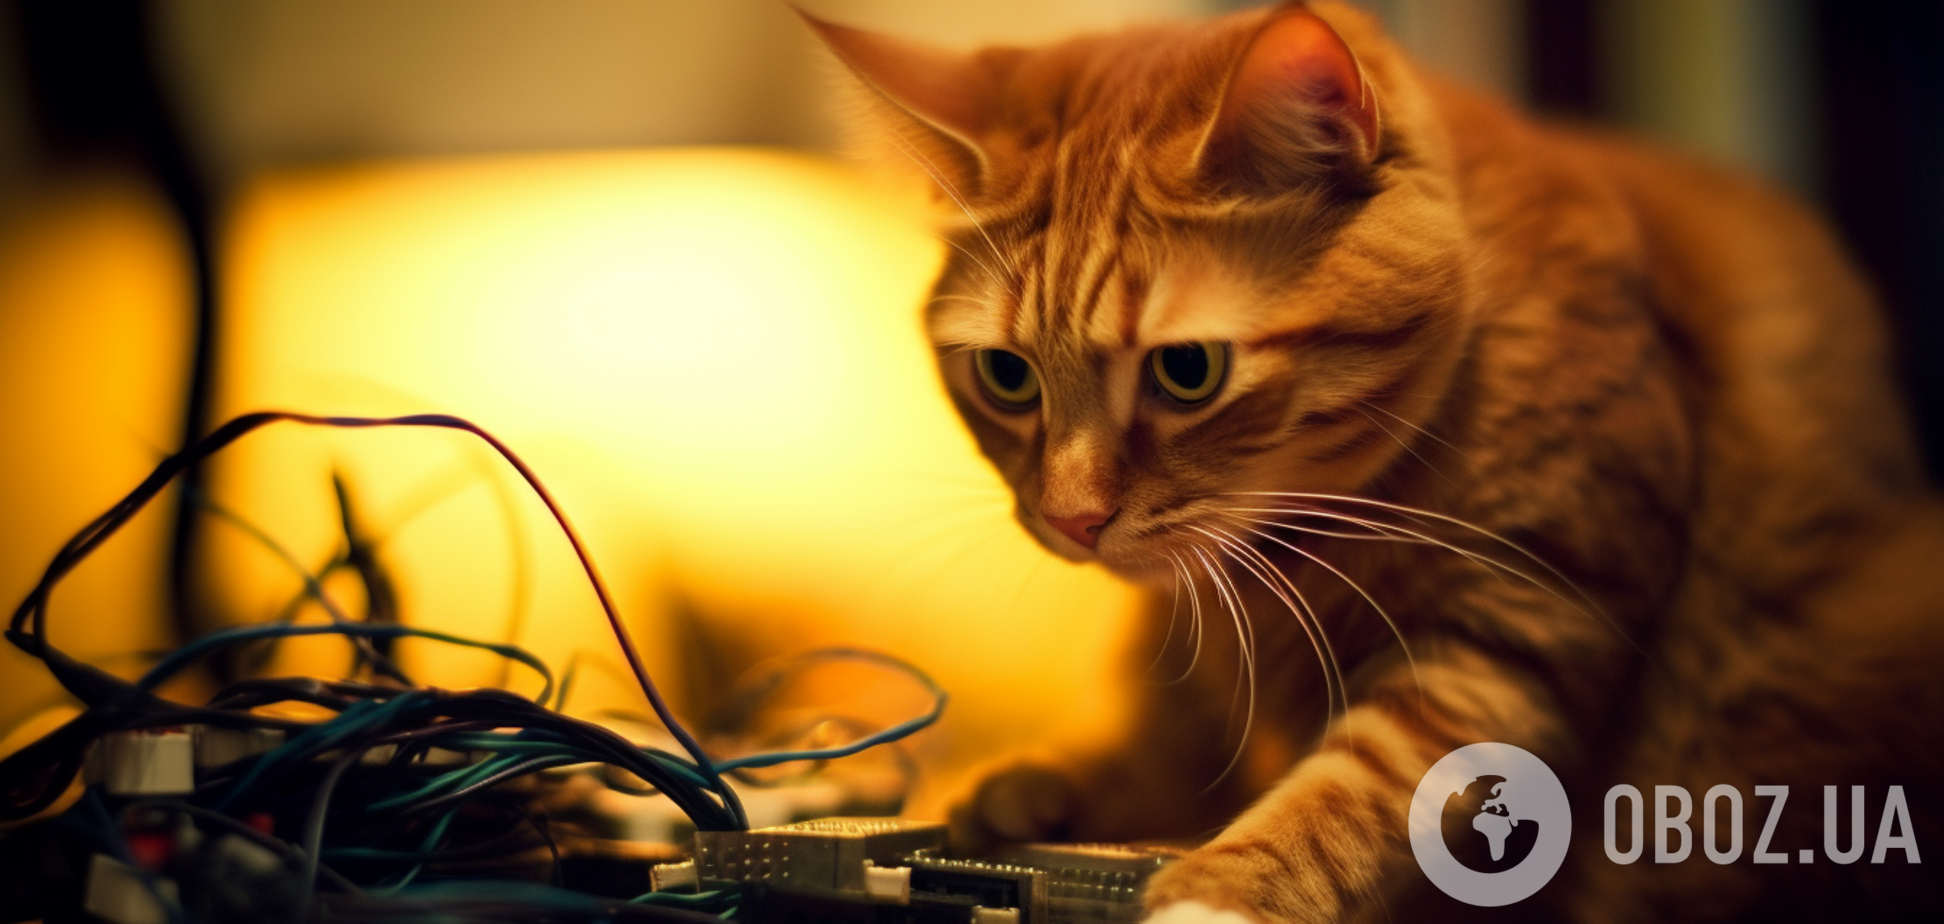 Кот грызет провода от техники - как отучить любимца | OBOZ.UA